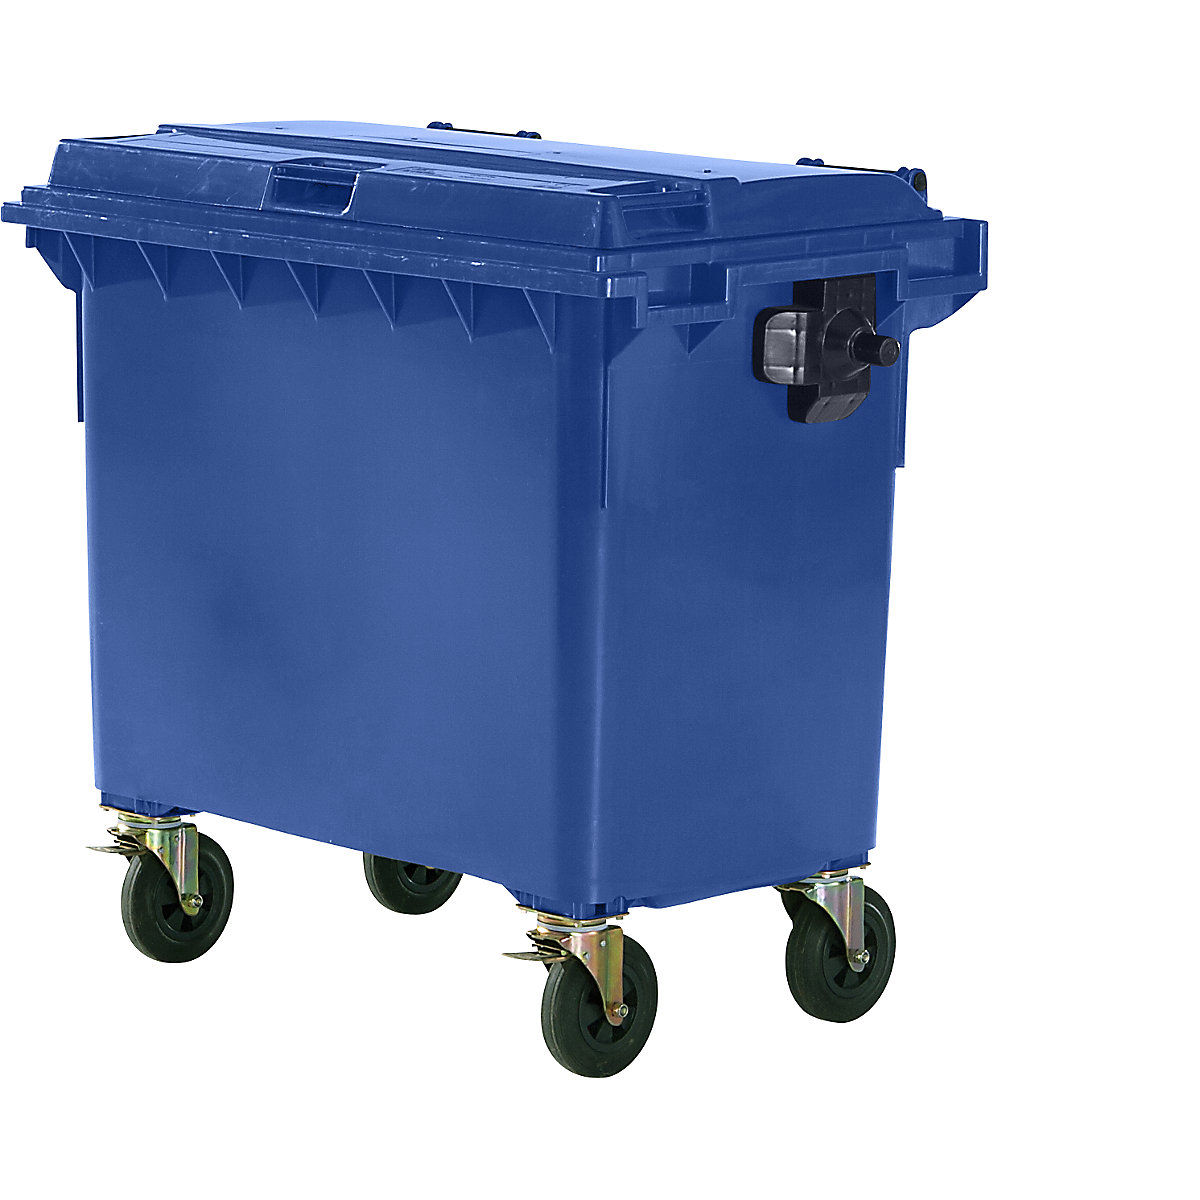 Conteneur à ordures en plastique conforme DIN EN 840, capacité 660 l, l x h x p 1360 x 1235 x 765 mm, bleu